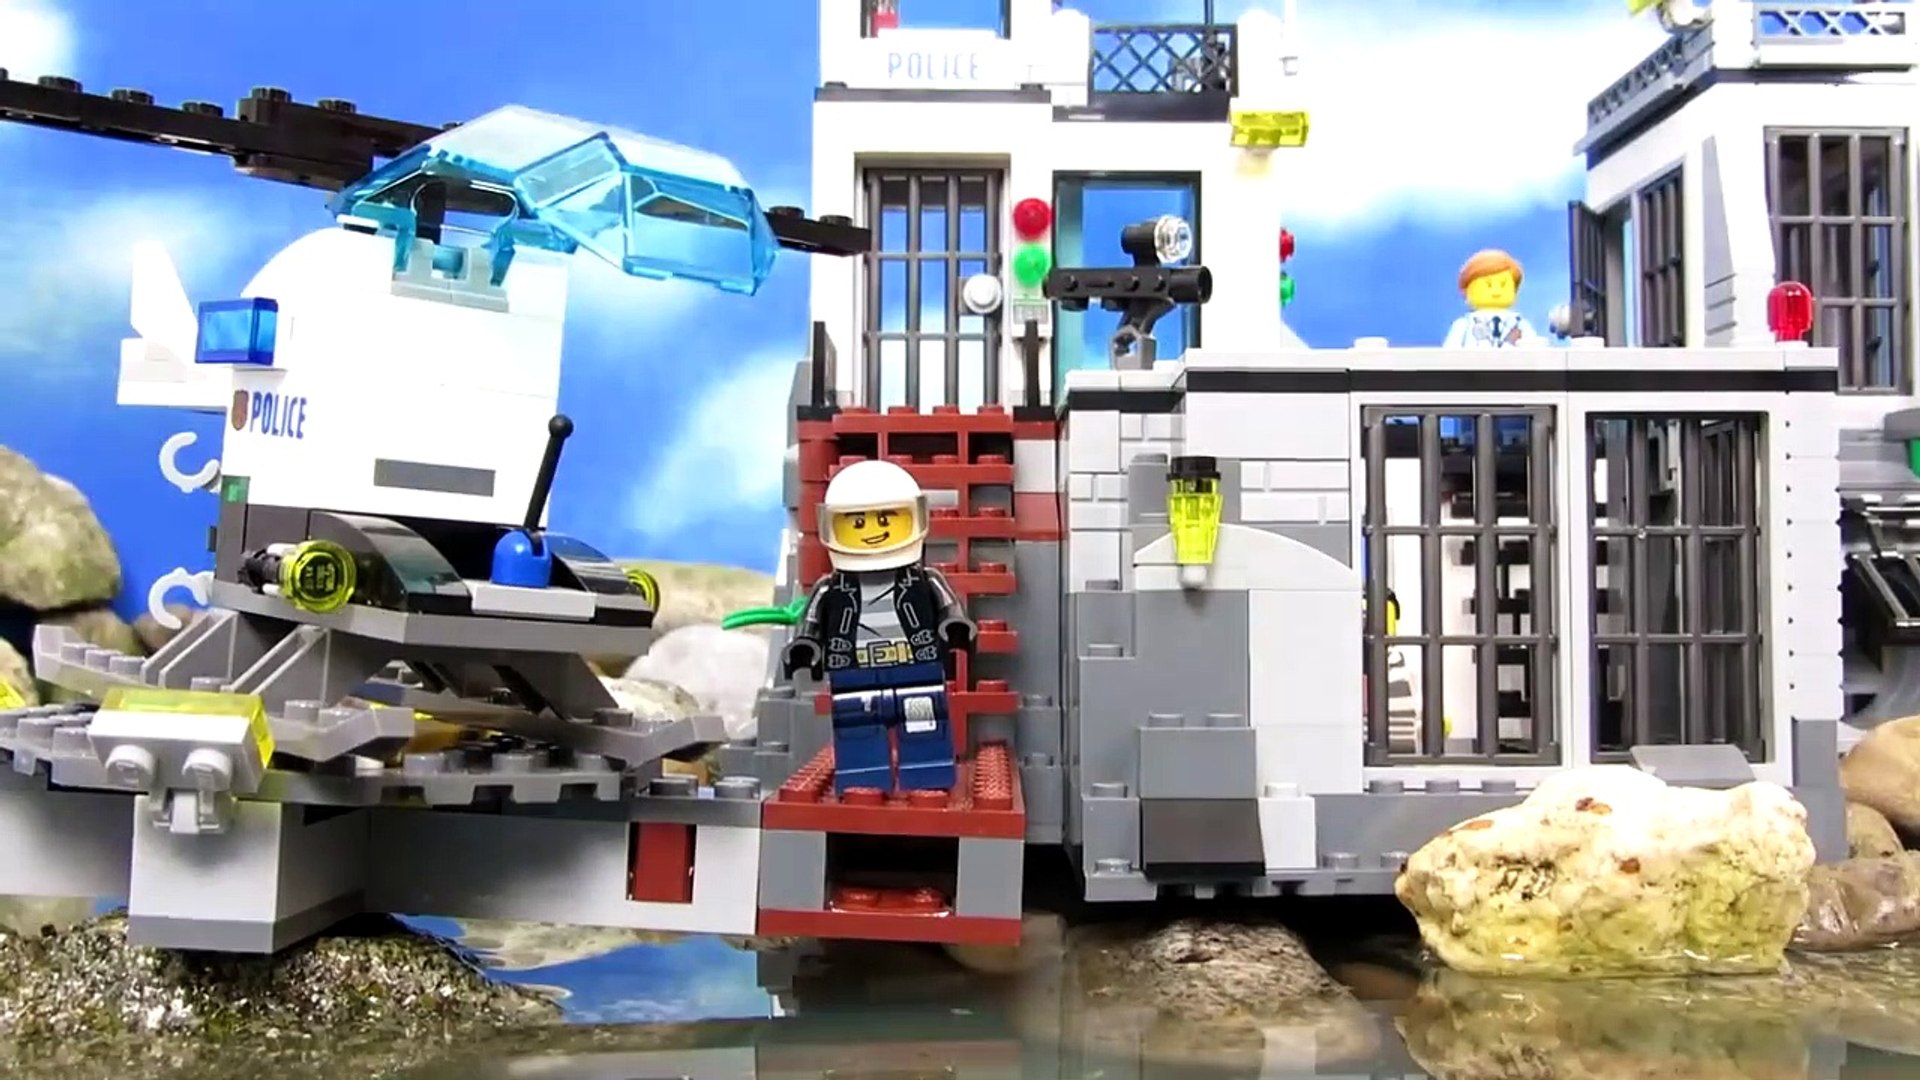 Mini Movie: The Escape From Prison Island - Vídeos de LEGO® City -   para crianças